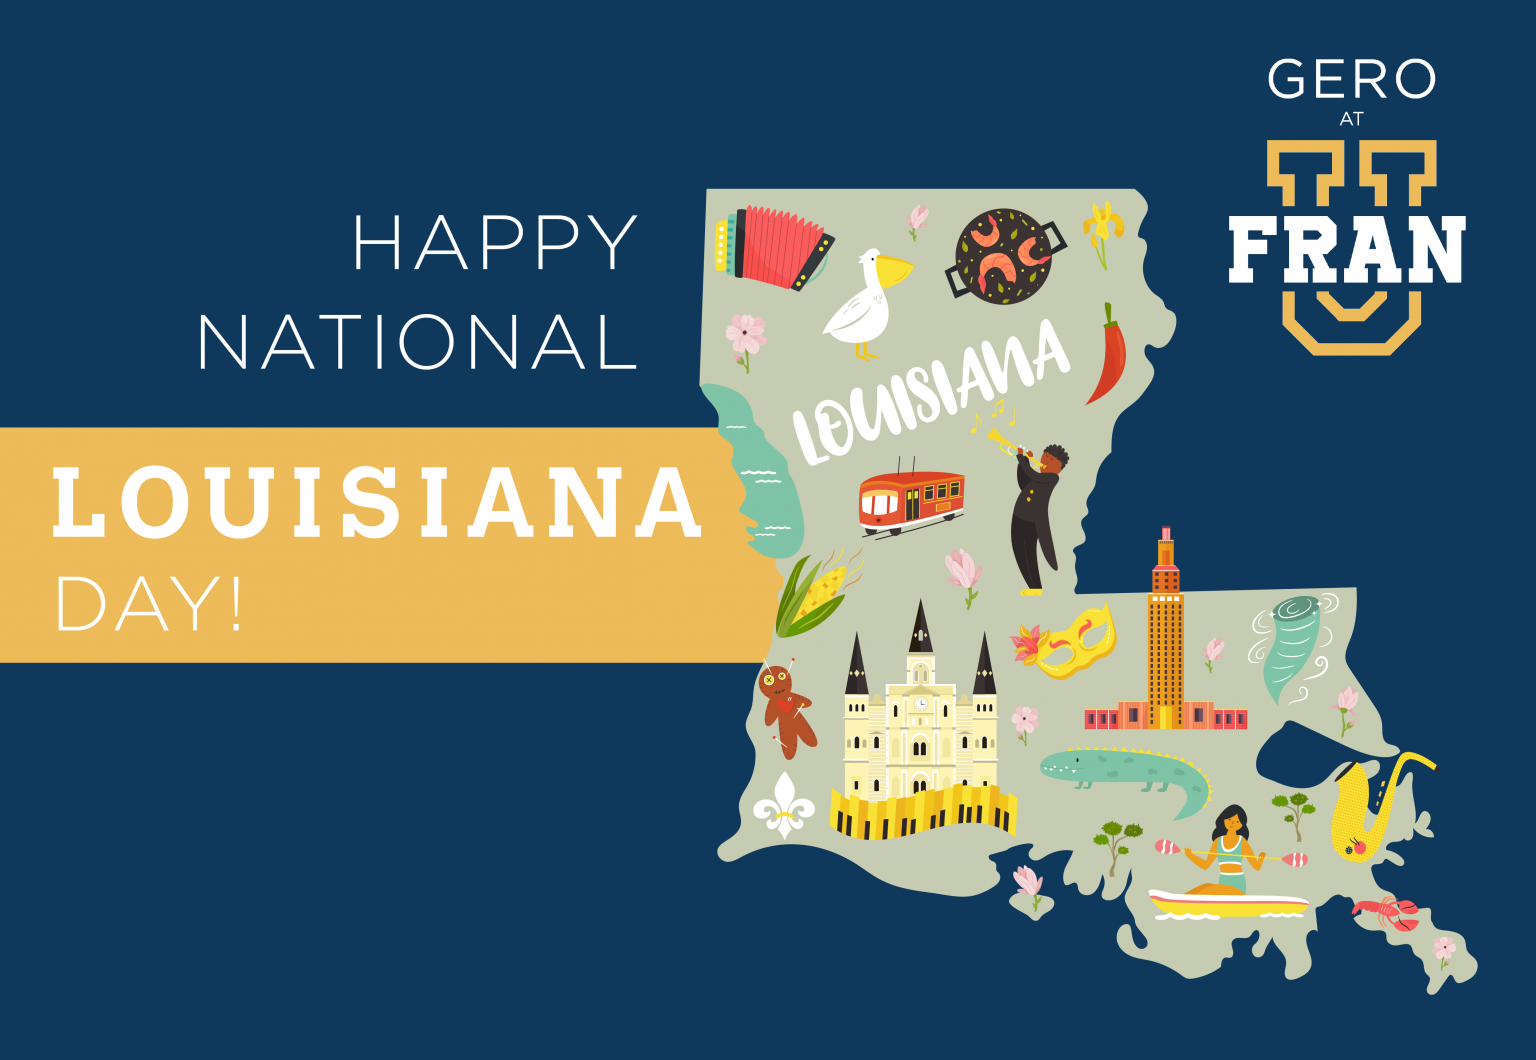 November 9th is National Louisiana Day! Gerontology at FranU